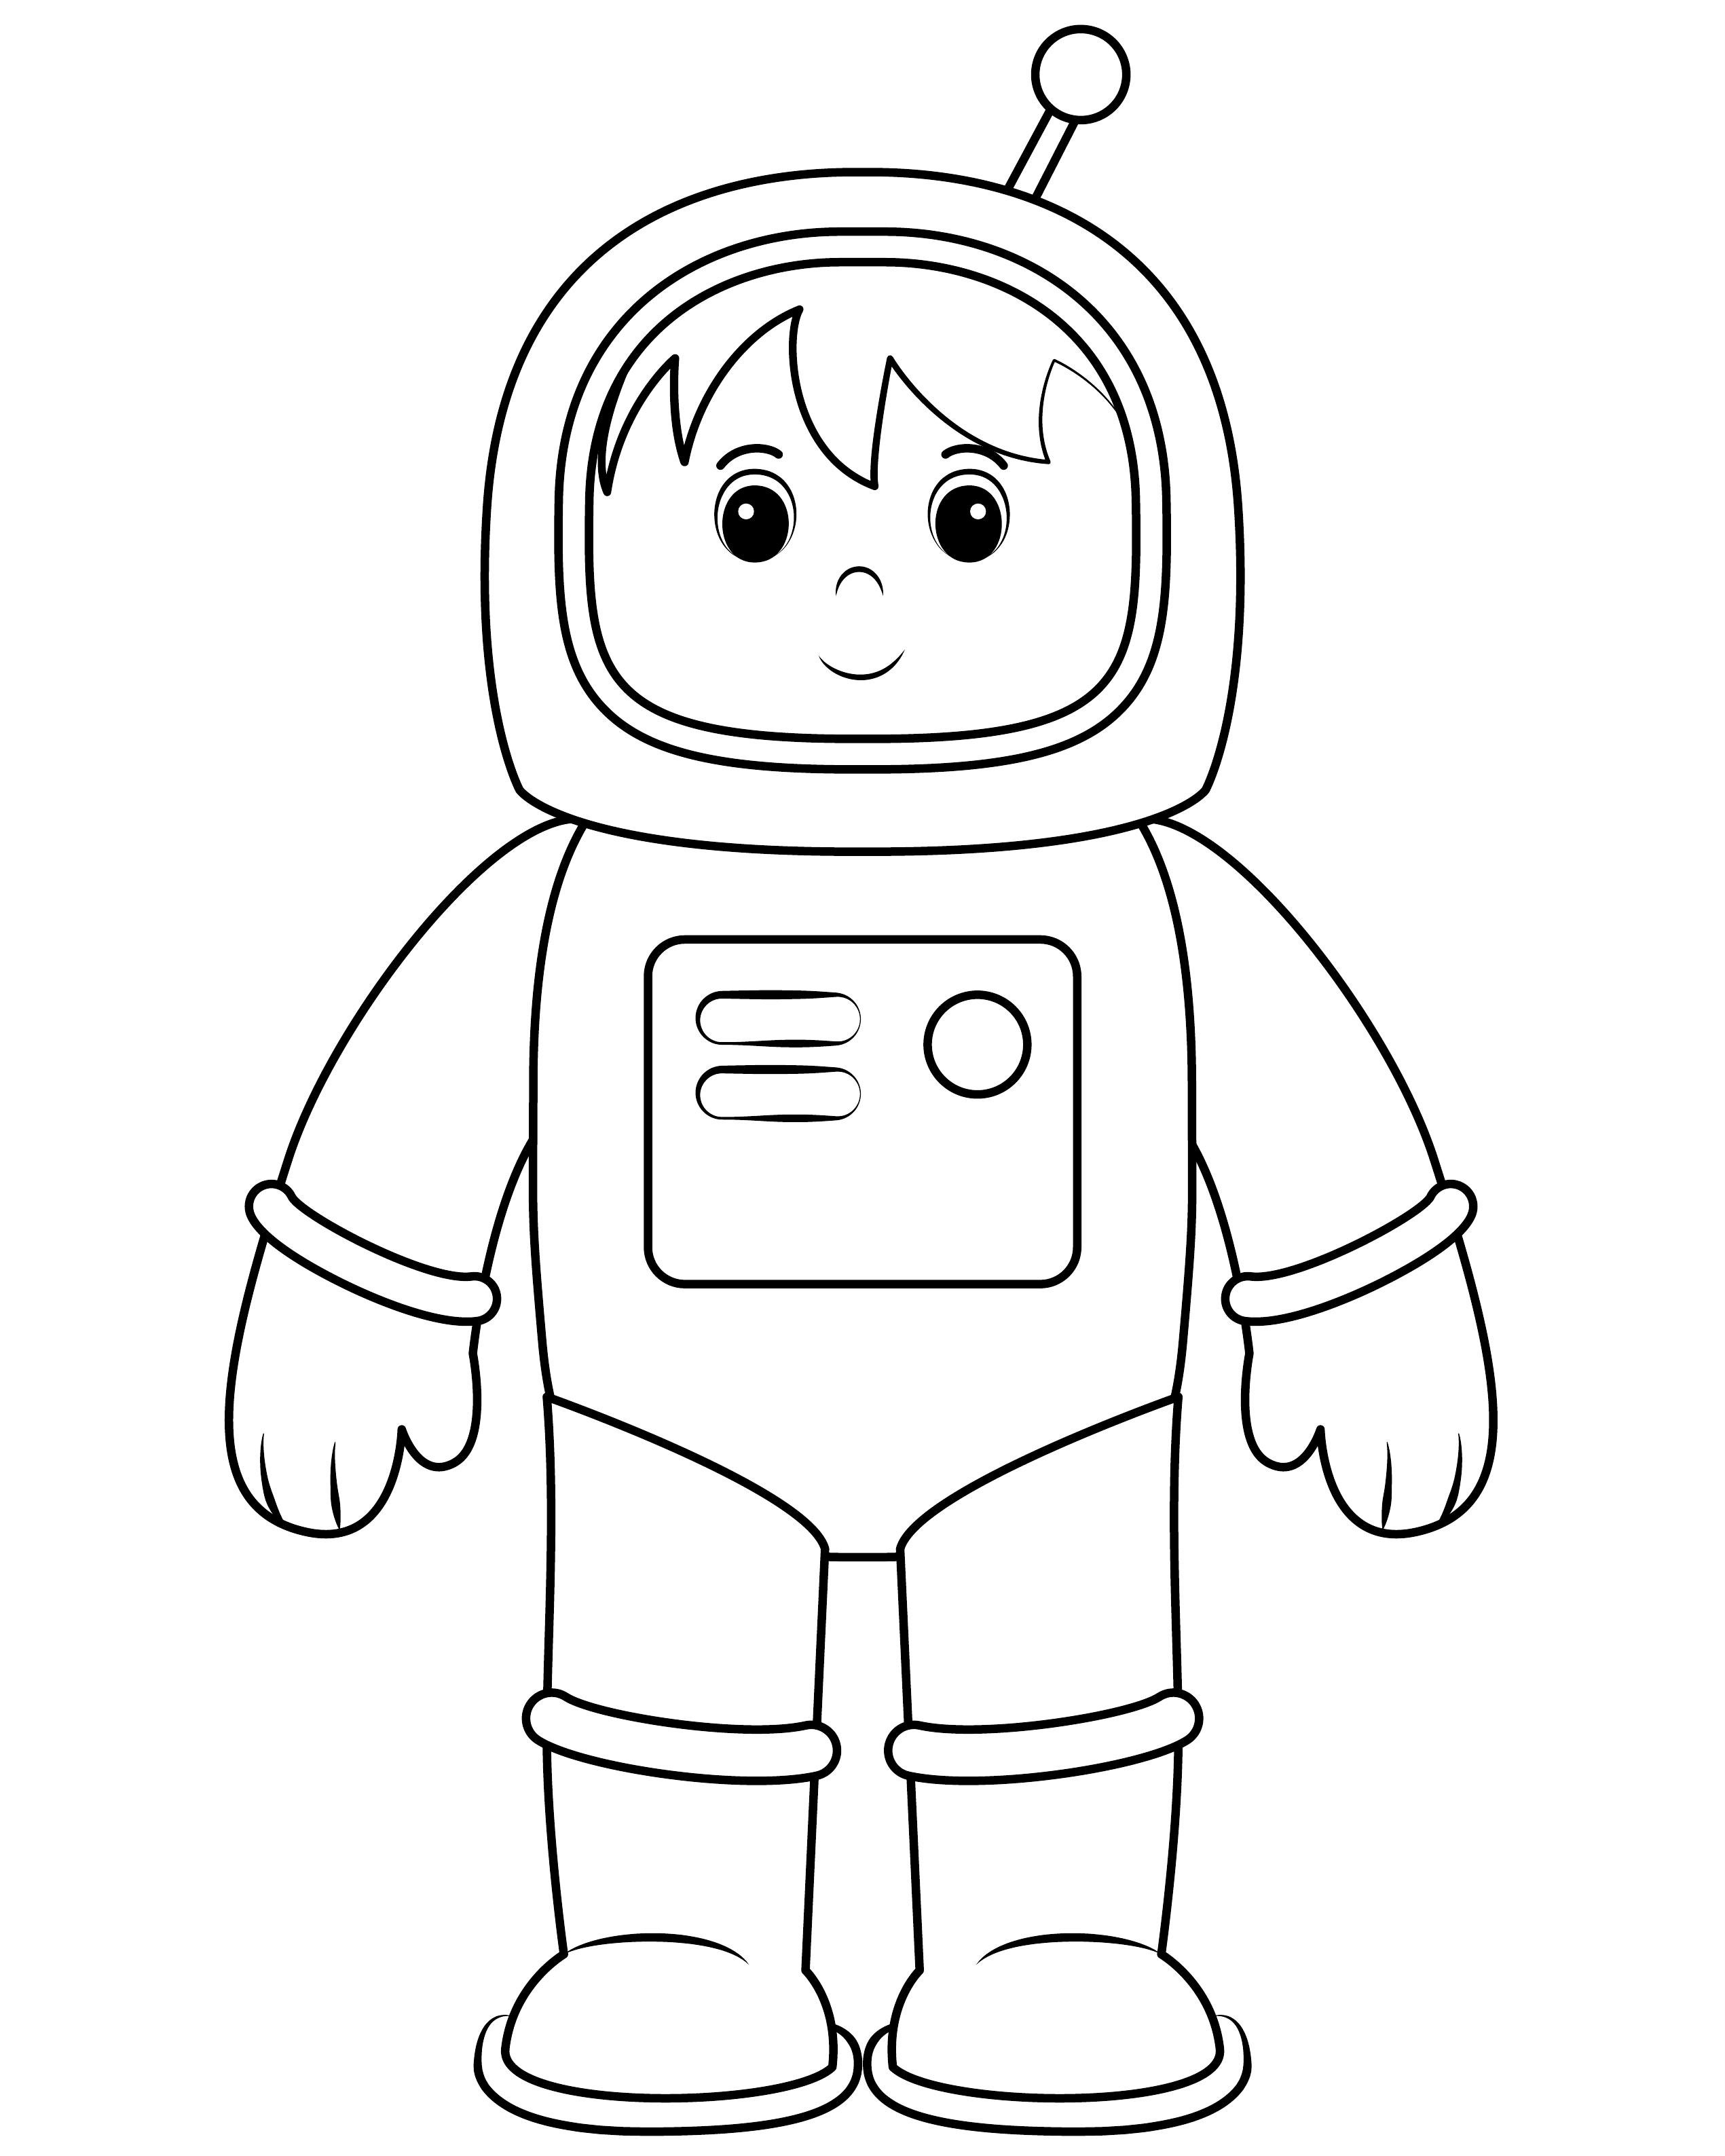 Распечатать космонавта для поделки. Космонавт раскраска для детей. Раскраска Космонавта в скафандре для детей. Космонавт для раскрашивания для детей. Космонавт раскраска для малышей.